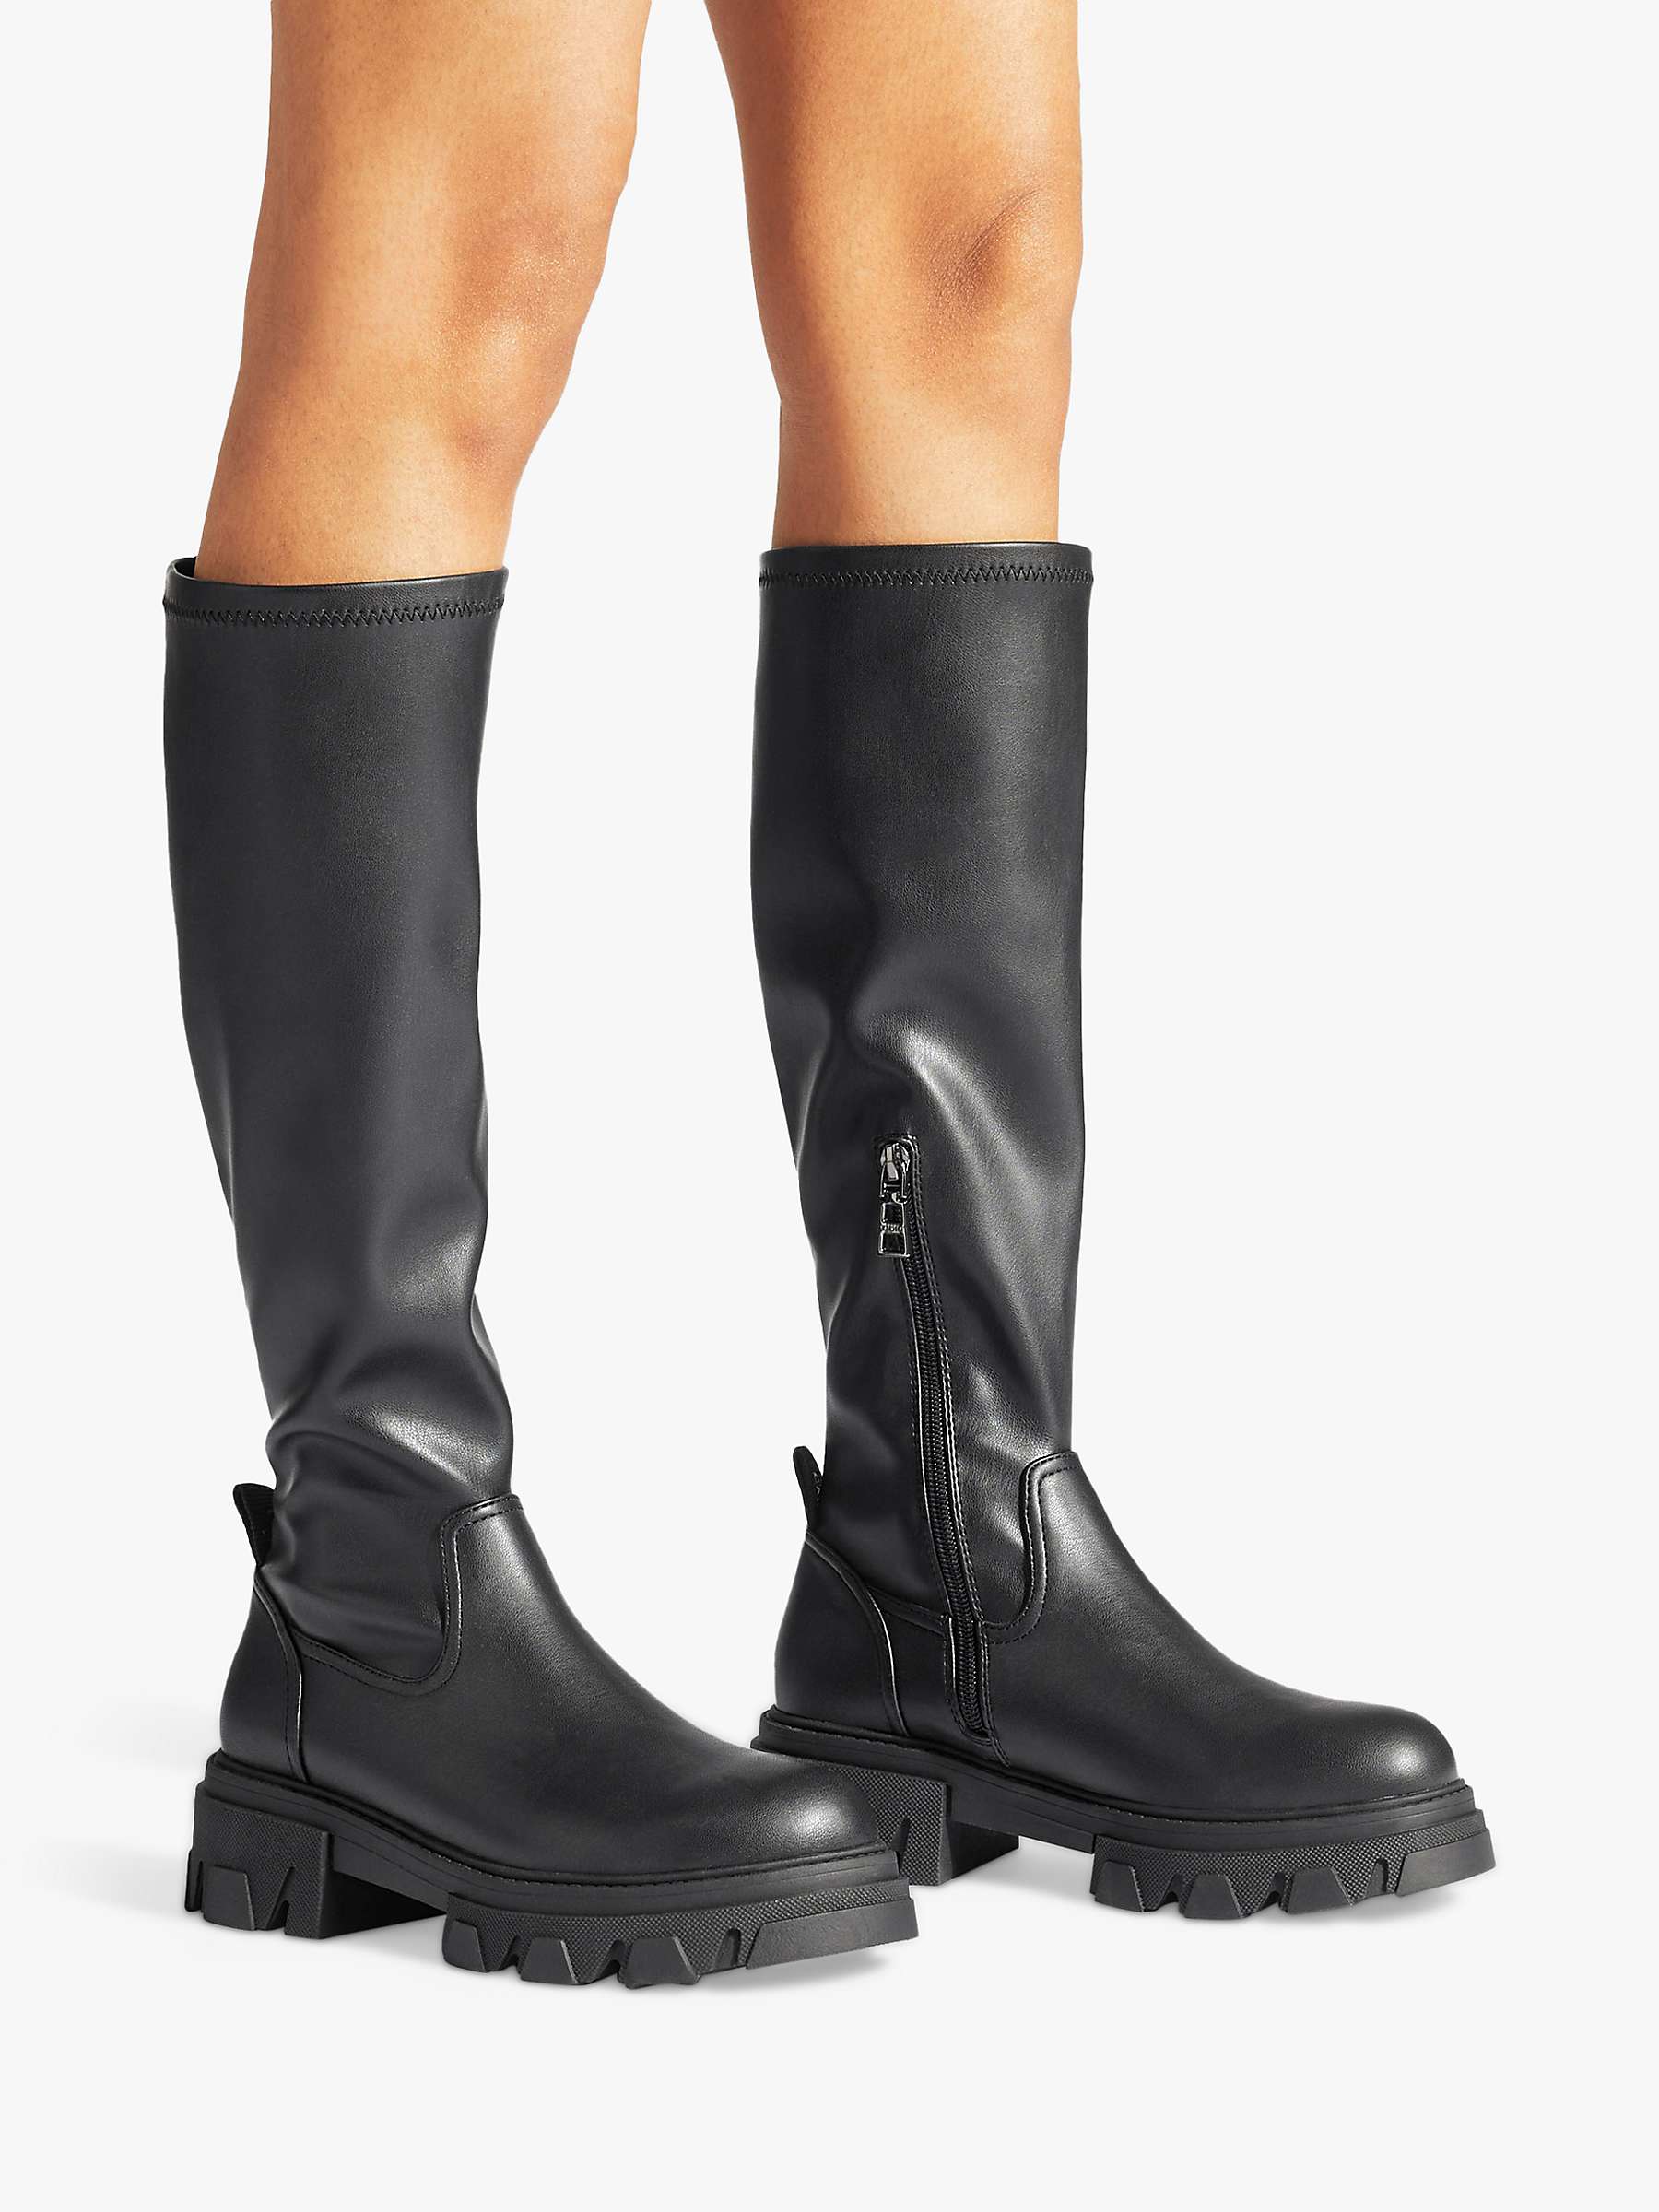 Buy Carvela Explorer Knee High Boots, Black Online at johnlewis.com